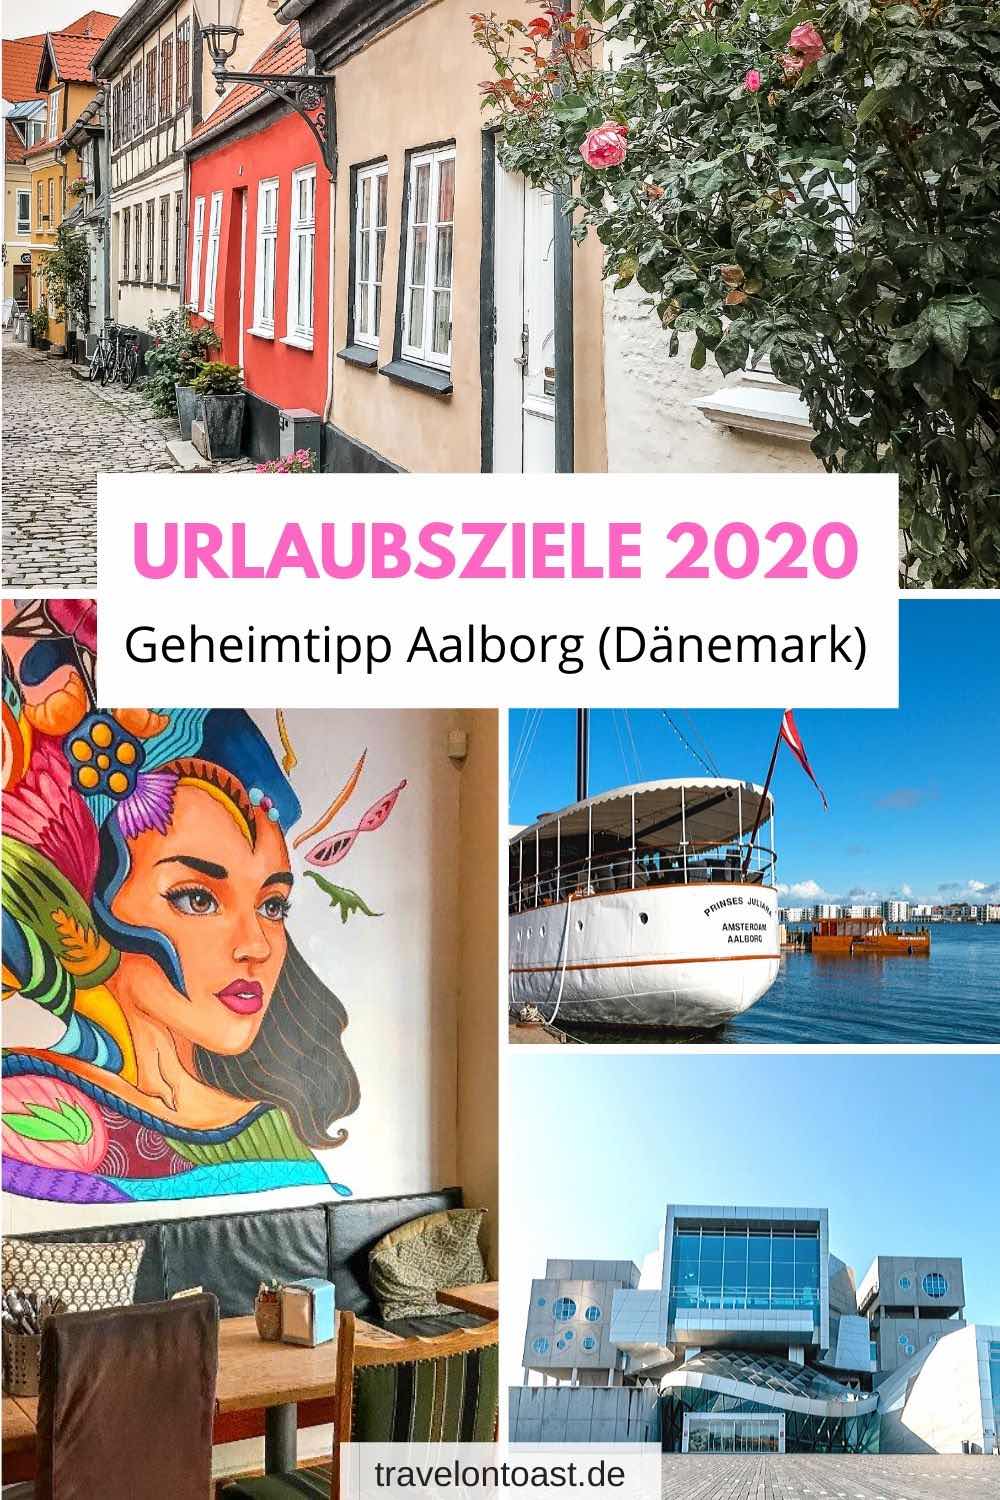 (Werbung) Urlaubsziele 2020: Ein echter Geheimtipp für deinen Städtetrip Europa ist Aalborg Dänemark. Dich erwarten Wikinger, bunte Häuser, moderne Architektur, eine Sauna am Fjord und Zimtschnecken. Hol dir die besten Tipps für Aalborg! 2020 Urlaub / Urlaubsplanung 2020 / Urlaub 2020 planen / Dänemark / Dänemark Urlaub #Urlaub #Reisen